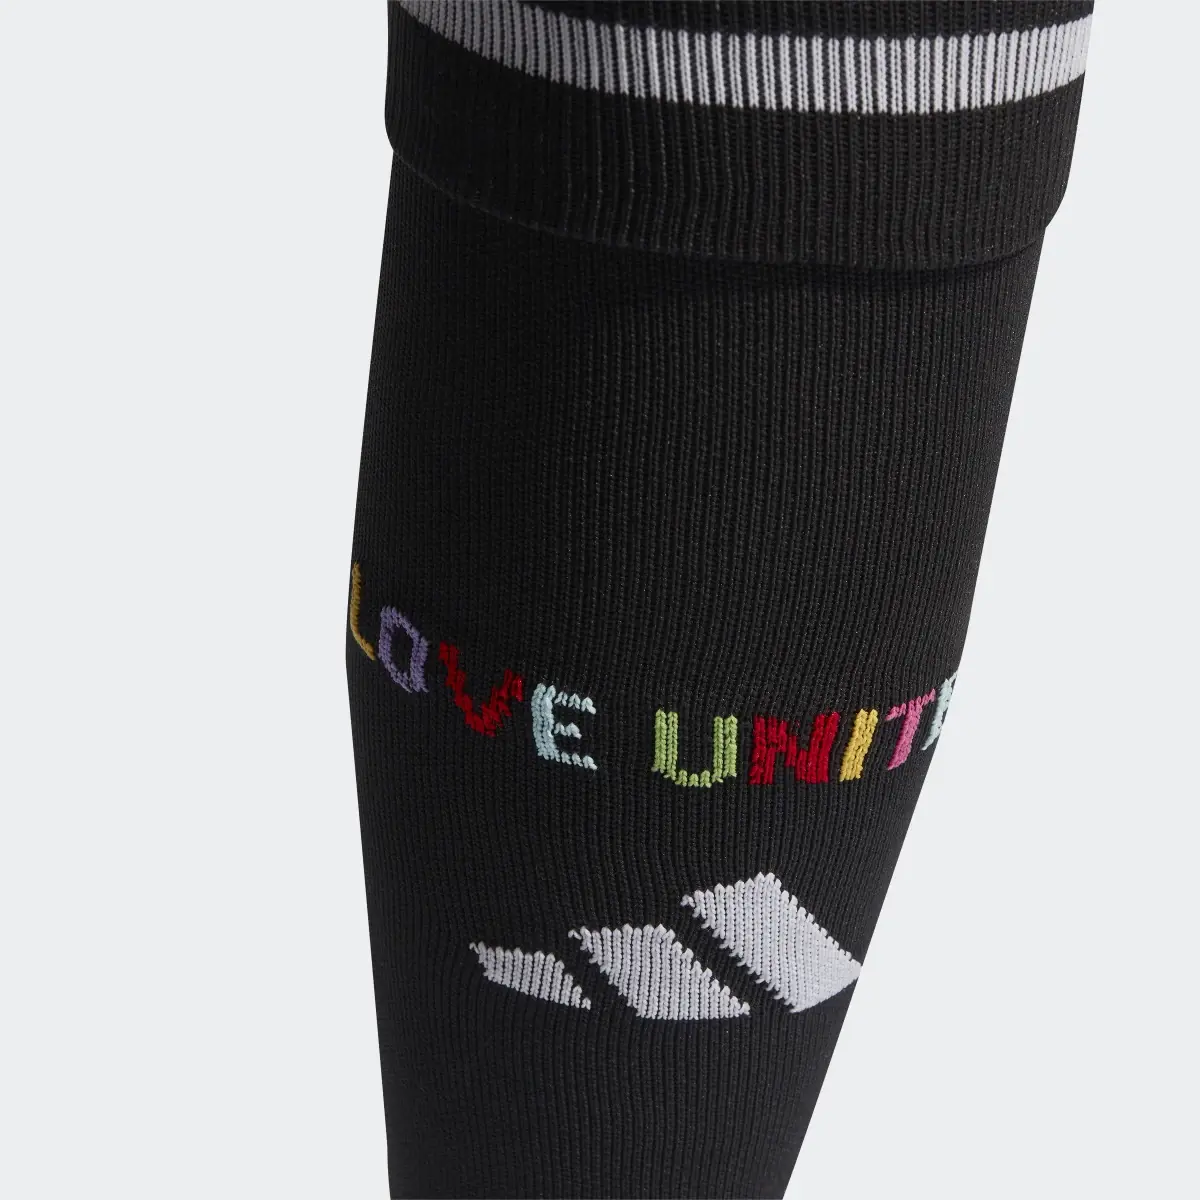 Adidas Pride Socks. 3